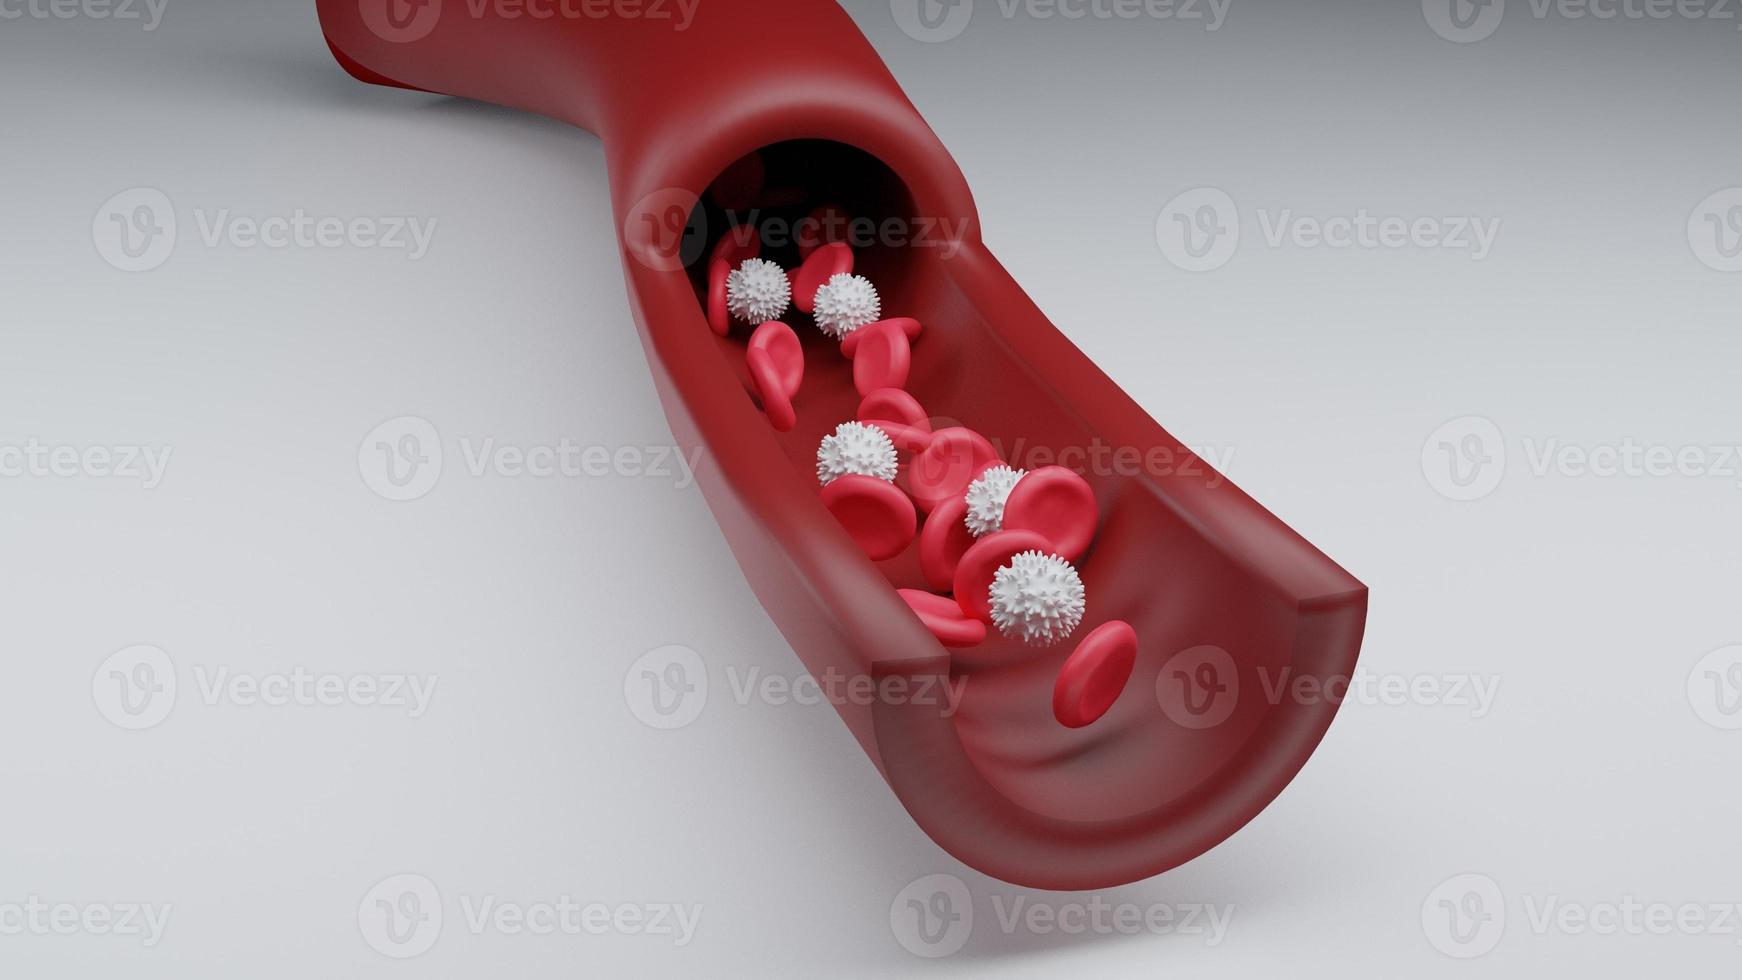 sangue vermelho e glóbulos brancos na corrente sanguínea. medicina e biologia pesquisa científica, glóbulos vermelhos na veia ou artéria, fluem dentro de um organismo vivo. foto